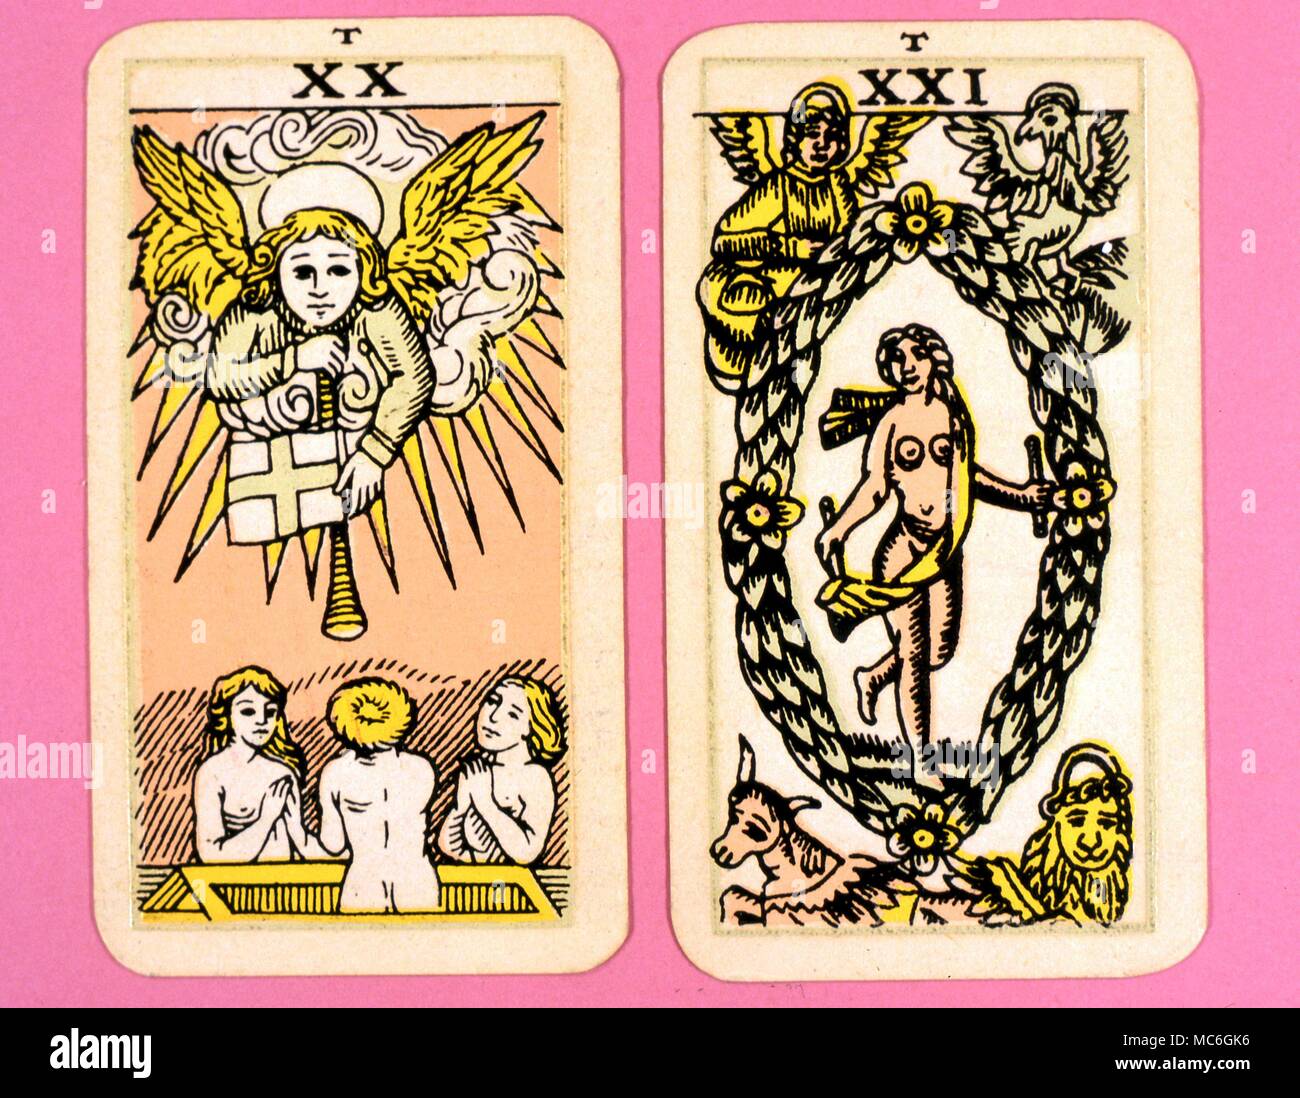 11 cartas de tarot bonitas: temáticas y con ilustraciones chulísimas